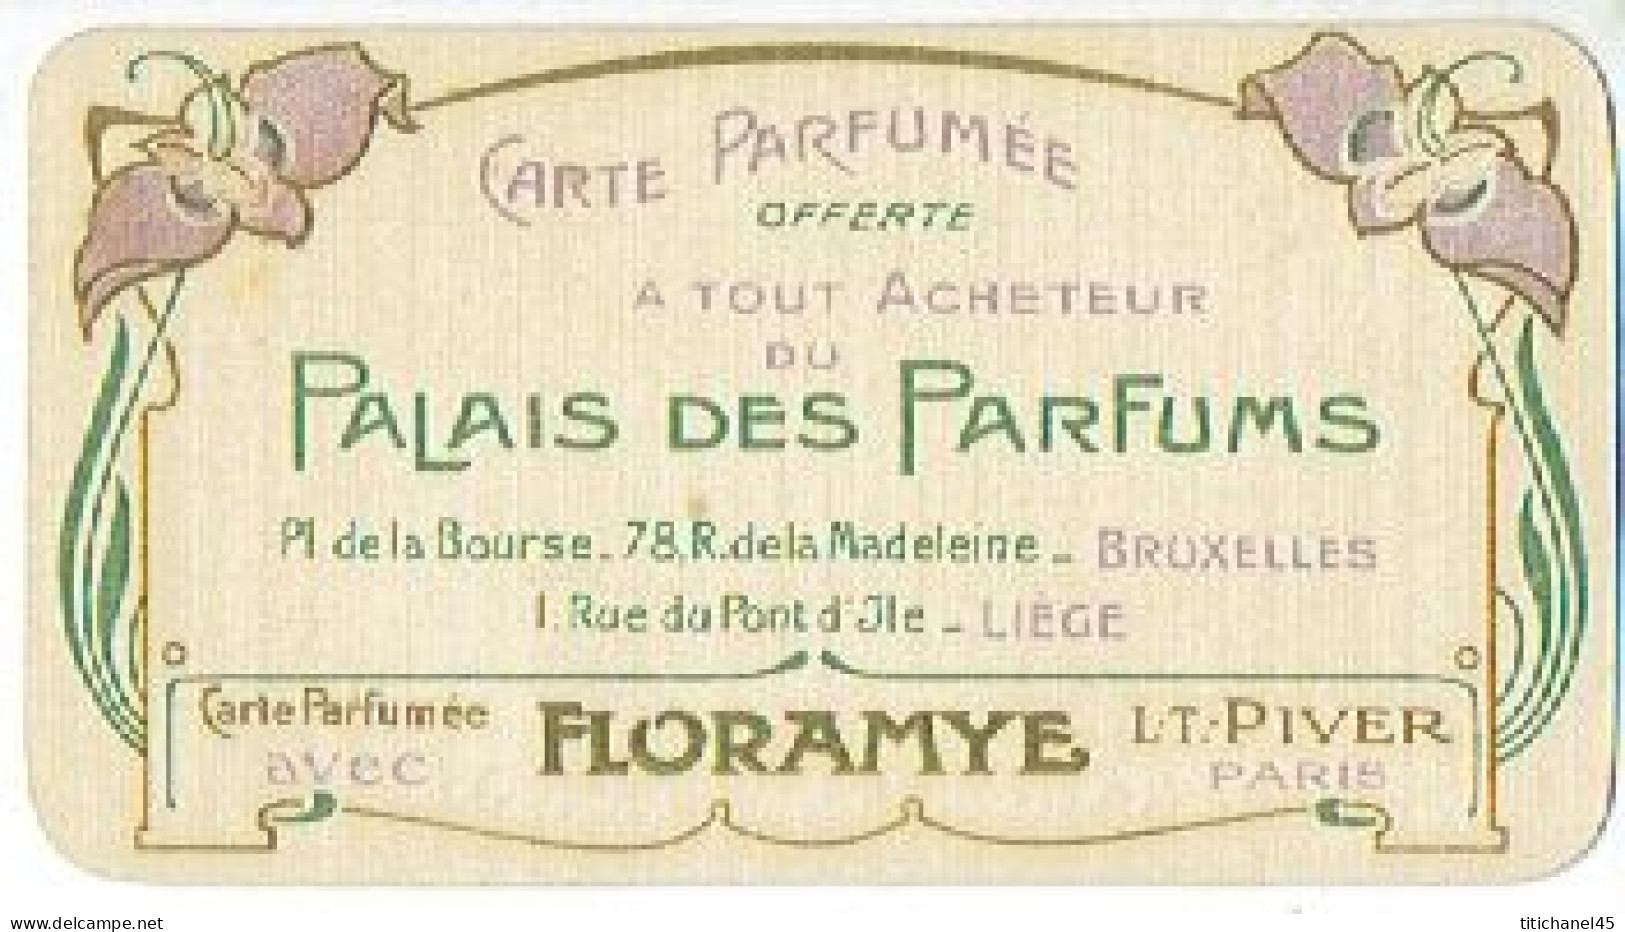 RARE Carte Parfum  PALAIS DES PARFUMS - FLORAMYE De L.T. PIVER - Calendrier De 1906-1907 Au Verso - Vintage (until 1960)